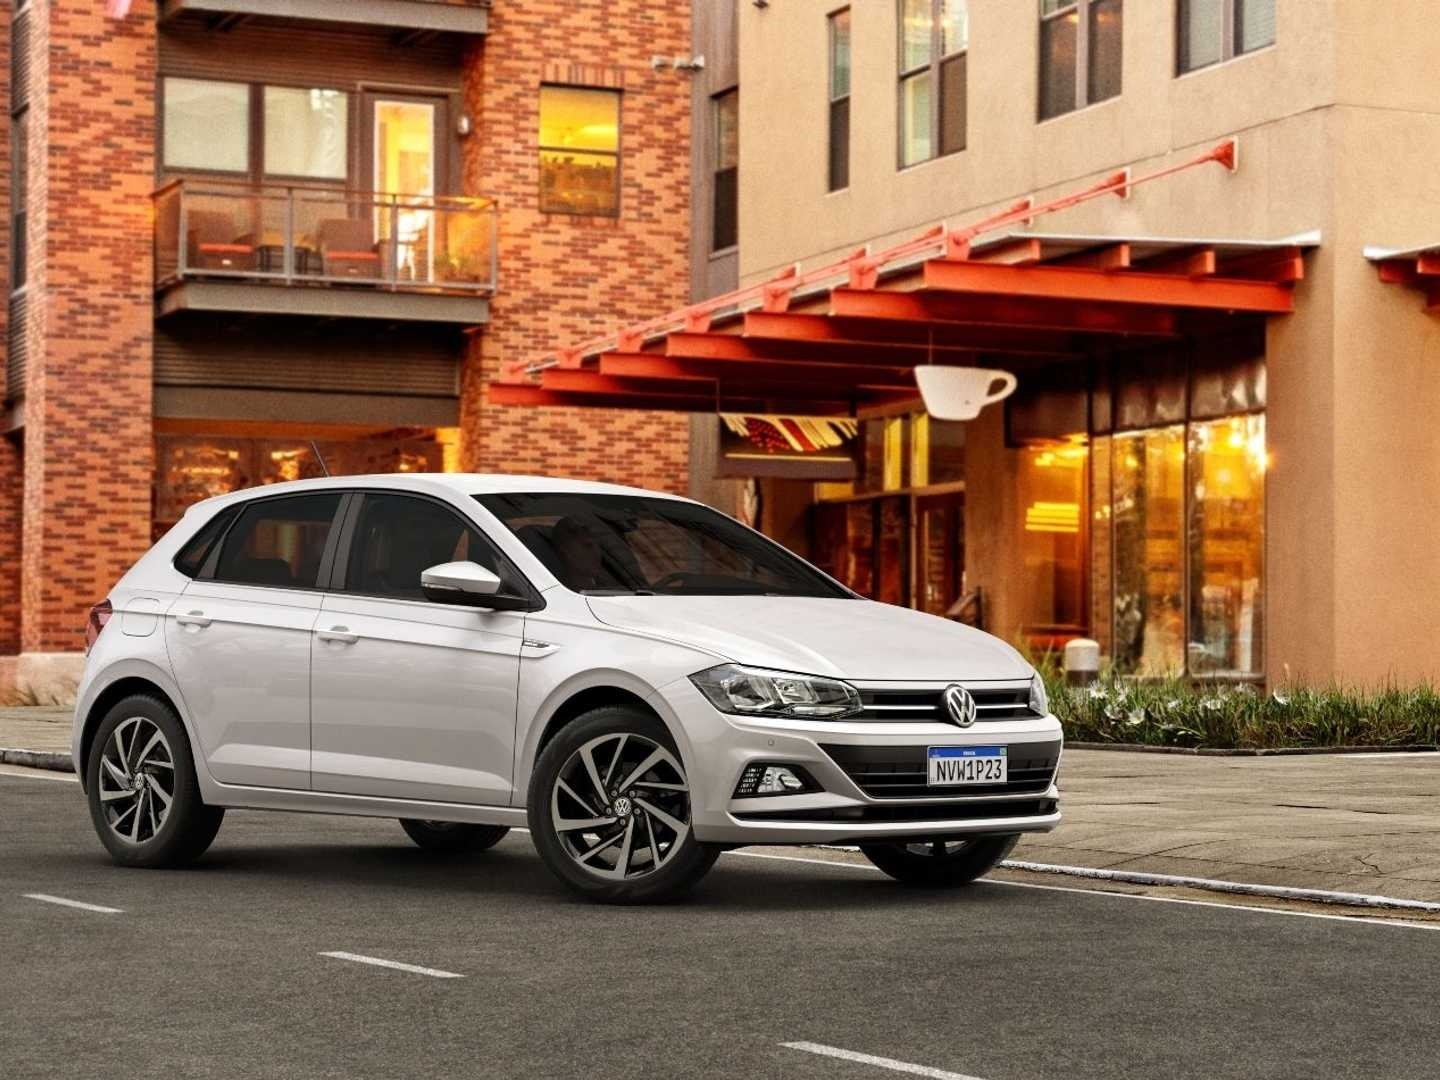 VW Polo - veja quais são seus defeitos